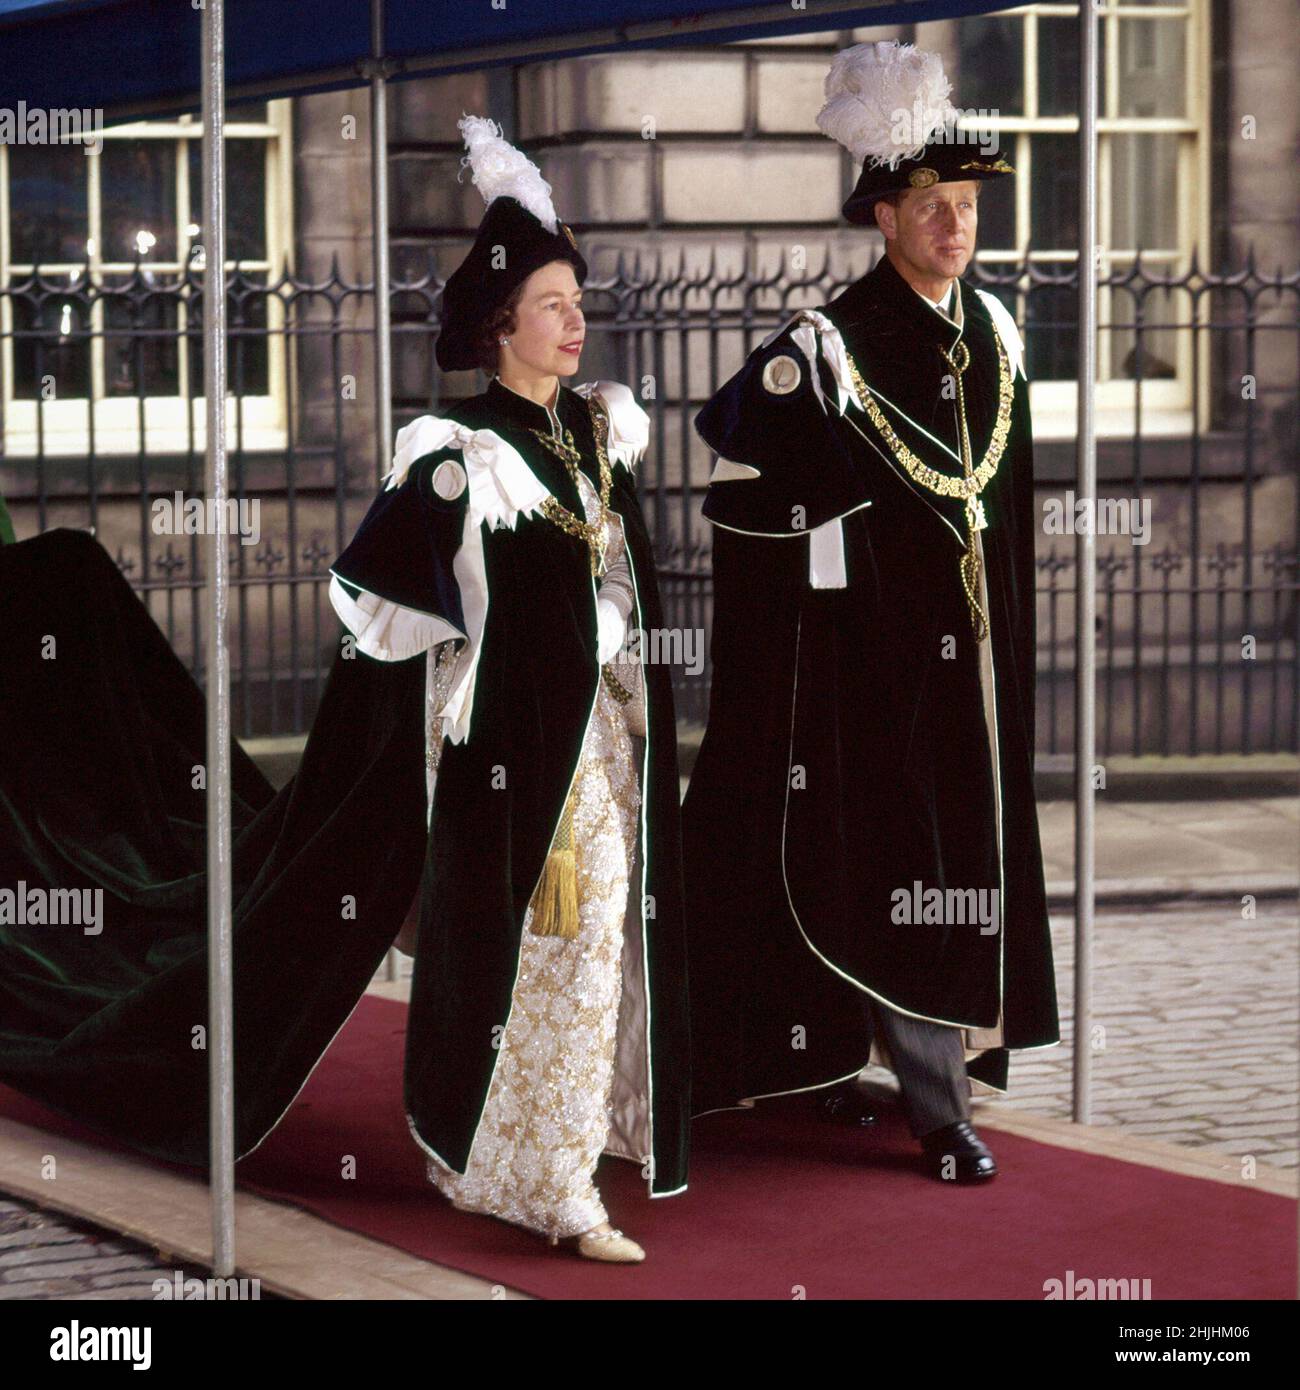 Foto di archivio datata 01/07/1953 della regina Elisabetta II e del duca di Edimburgo, indossando il loro ordine dei vestibi Thistle, dopo il servizio dell'ordine a Edimburgo. Data di emissione: Domenica 30 gennaio 2022. Foto Stock